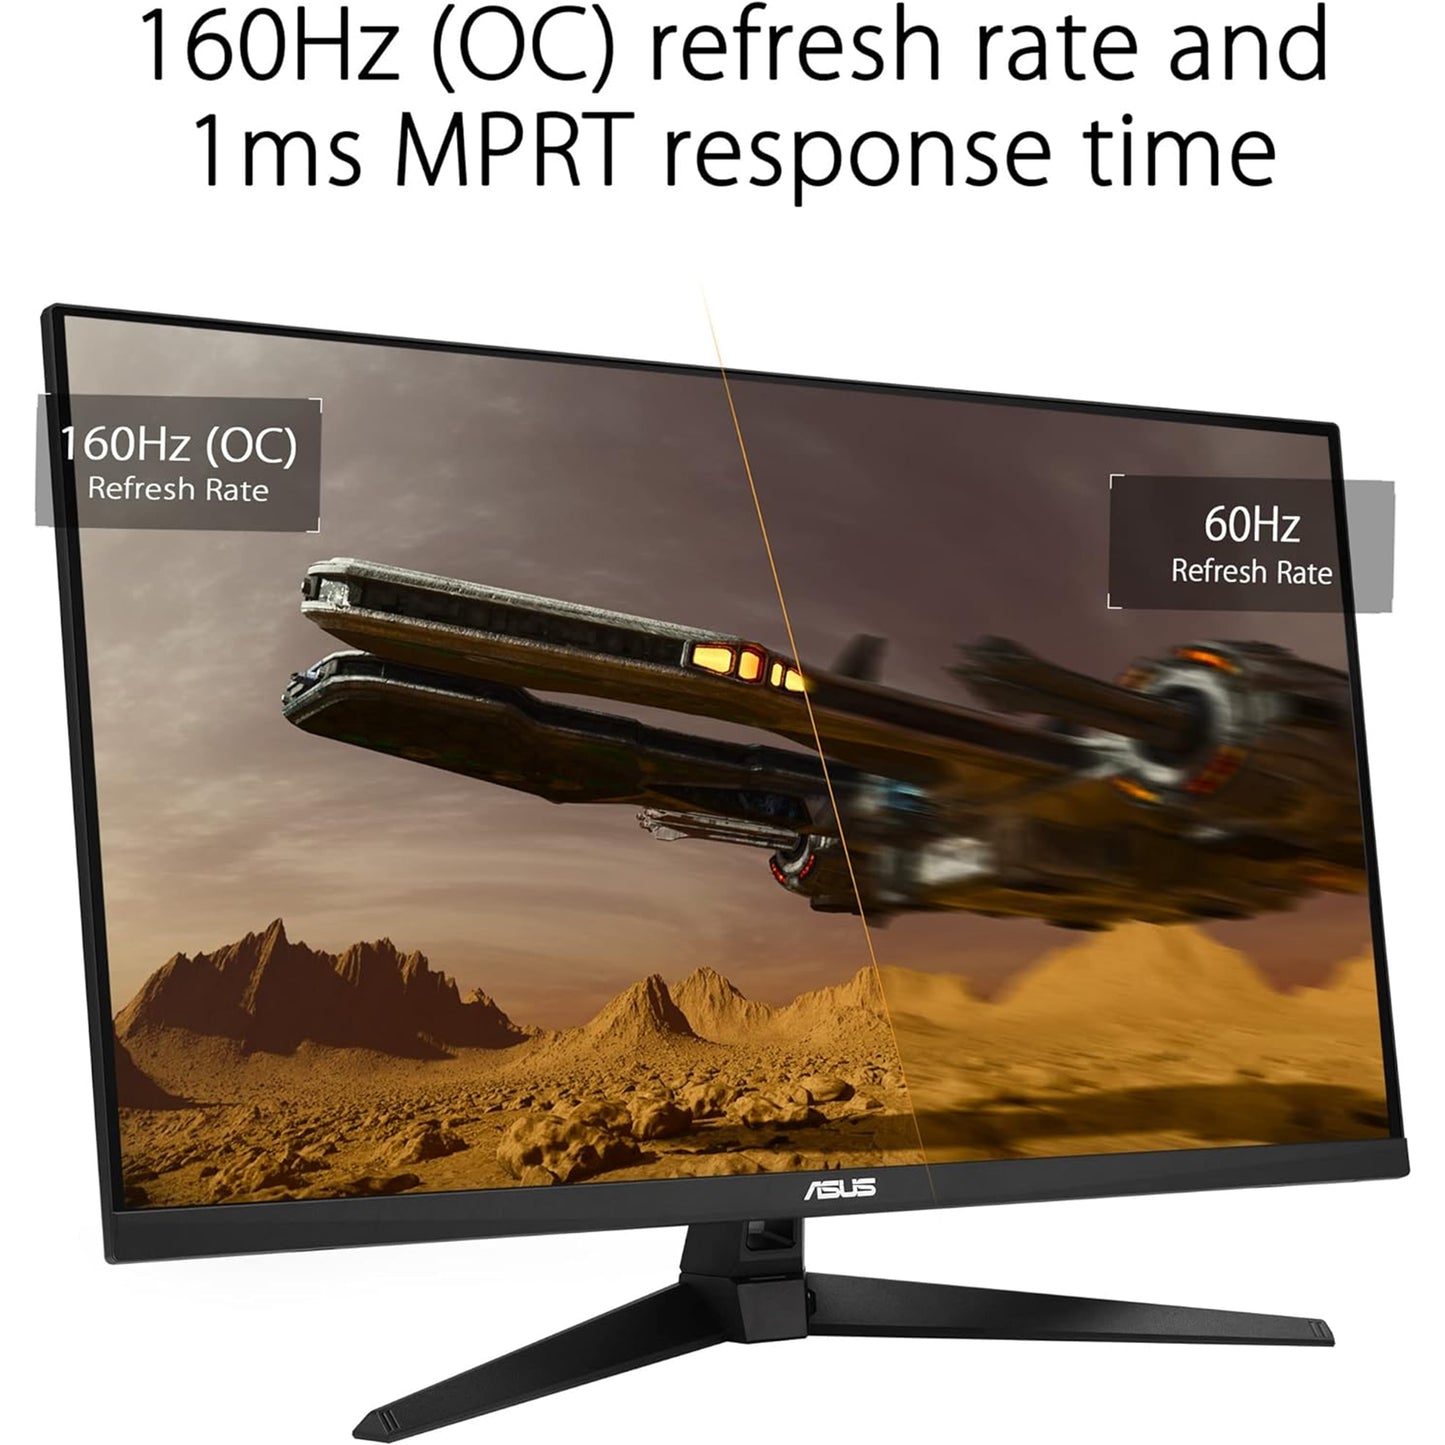 شاشة ASUS TUF Gaming مقاس 32 بوصة (31.5 بوصة قابلة للعرض) بدقة 4K HDR DSC (VG32UQA1A) - UHD (3840 × 2160)، 160 هرتز، 1 مللي ثانية، مزامنة ضبابية الحركة المنخفضة للغاية، Freesync Premium، HDMI2.1، مكبرات الصوت، 120% sRGB، DisplayHDR 400 